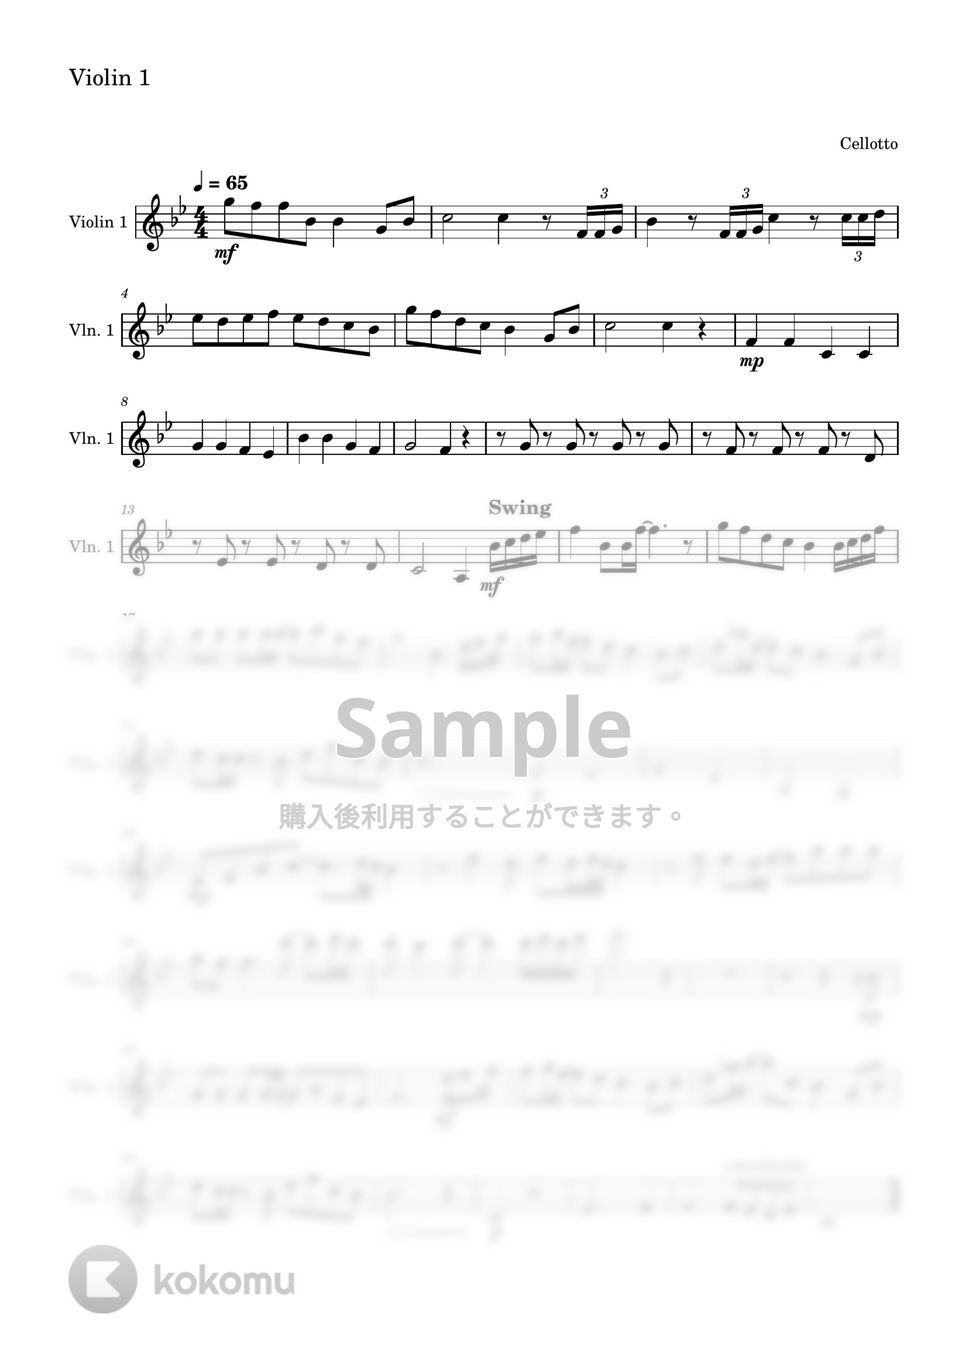 清水翔太 - 花束のかわりにメロディーを (ヴァイオリン1&2パート) by Cellotto